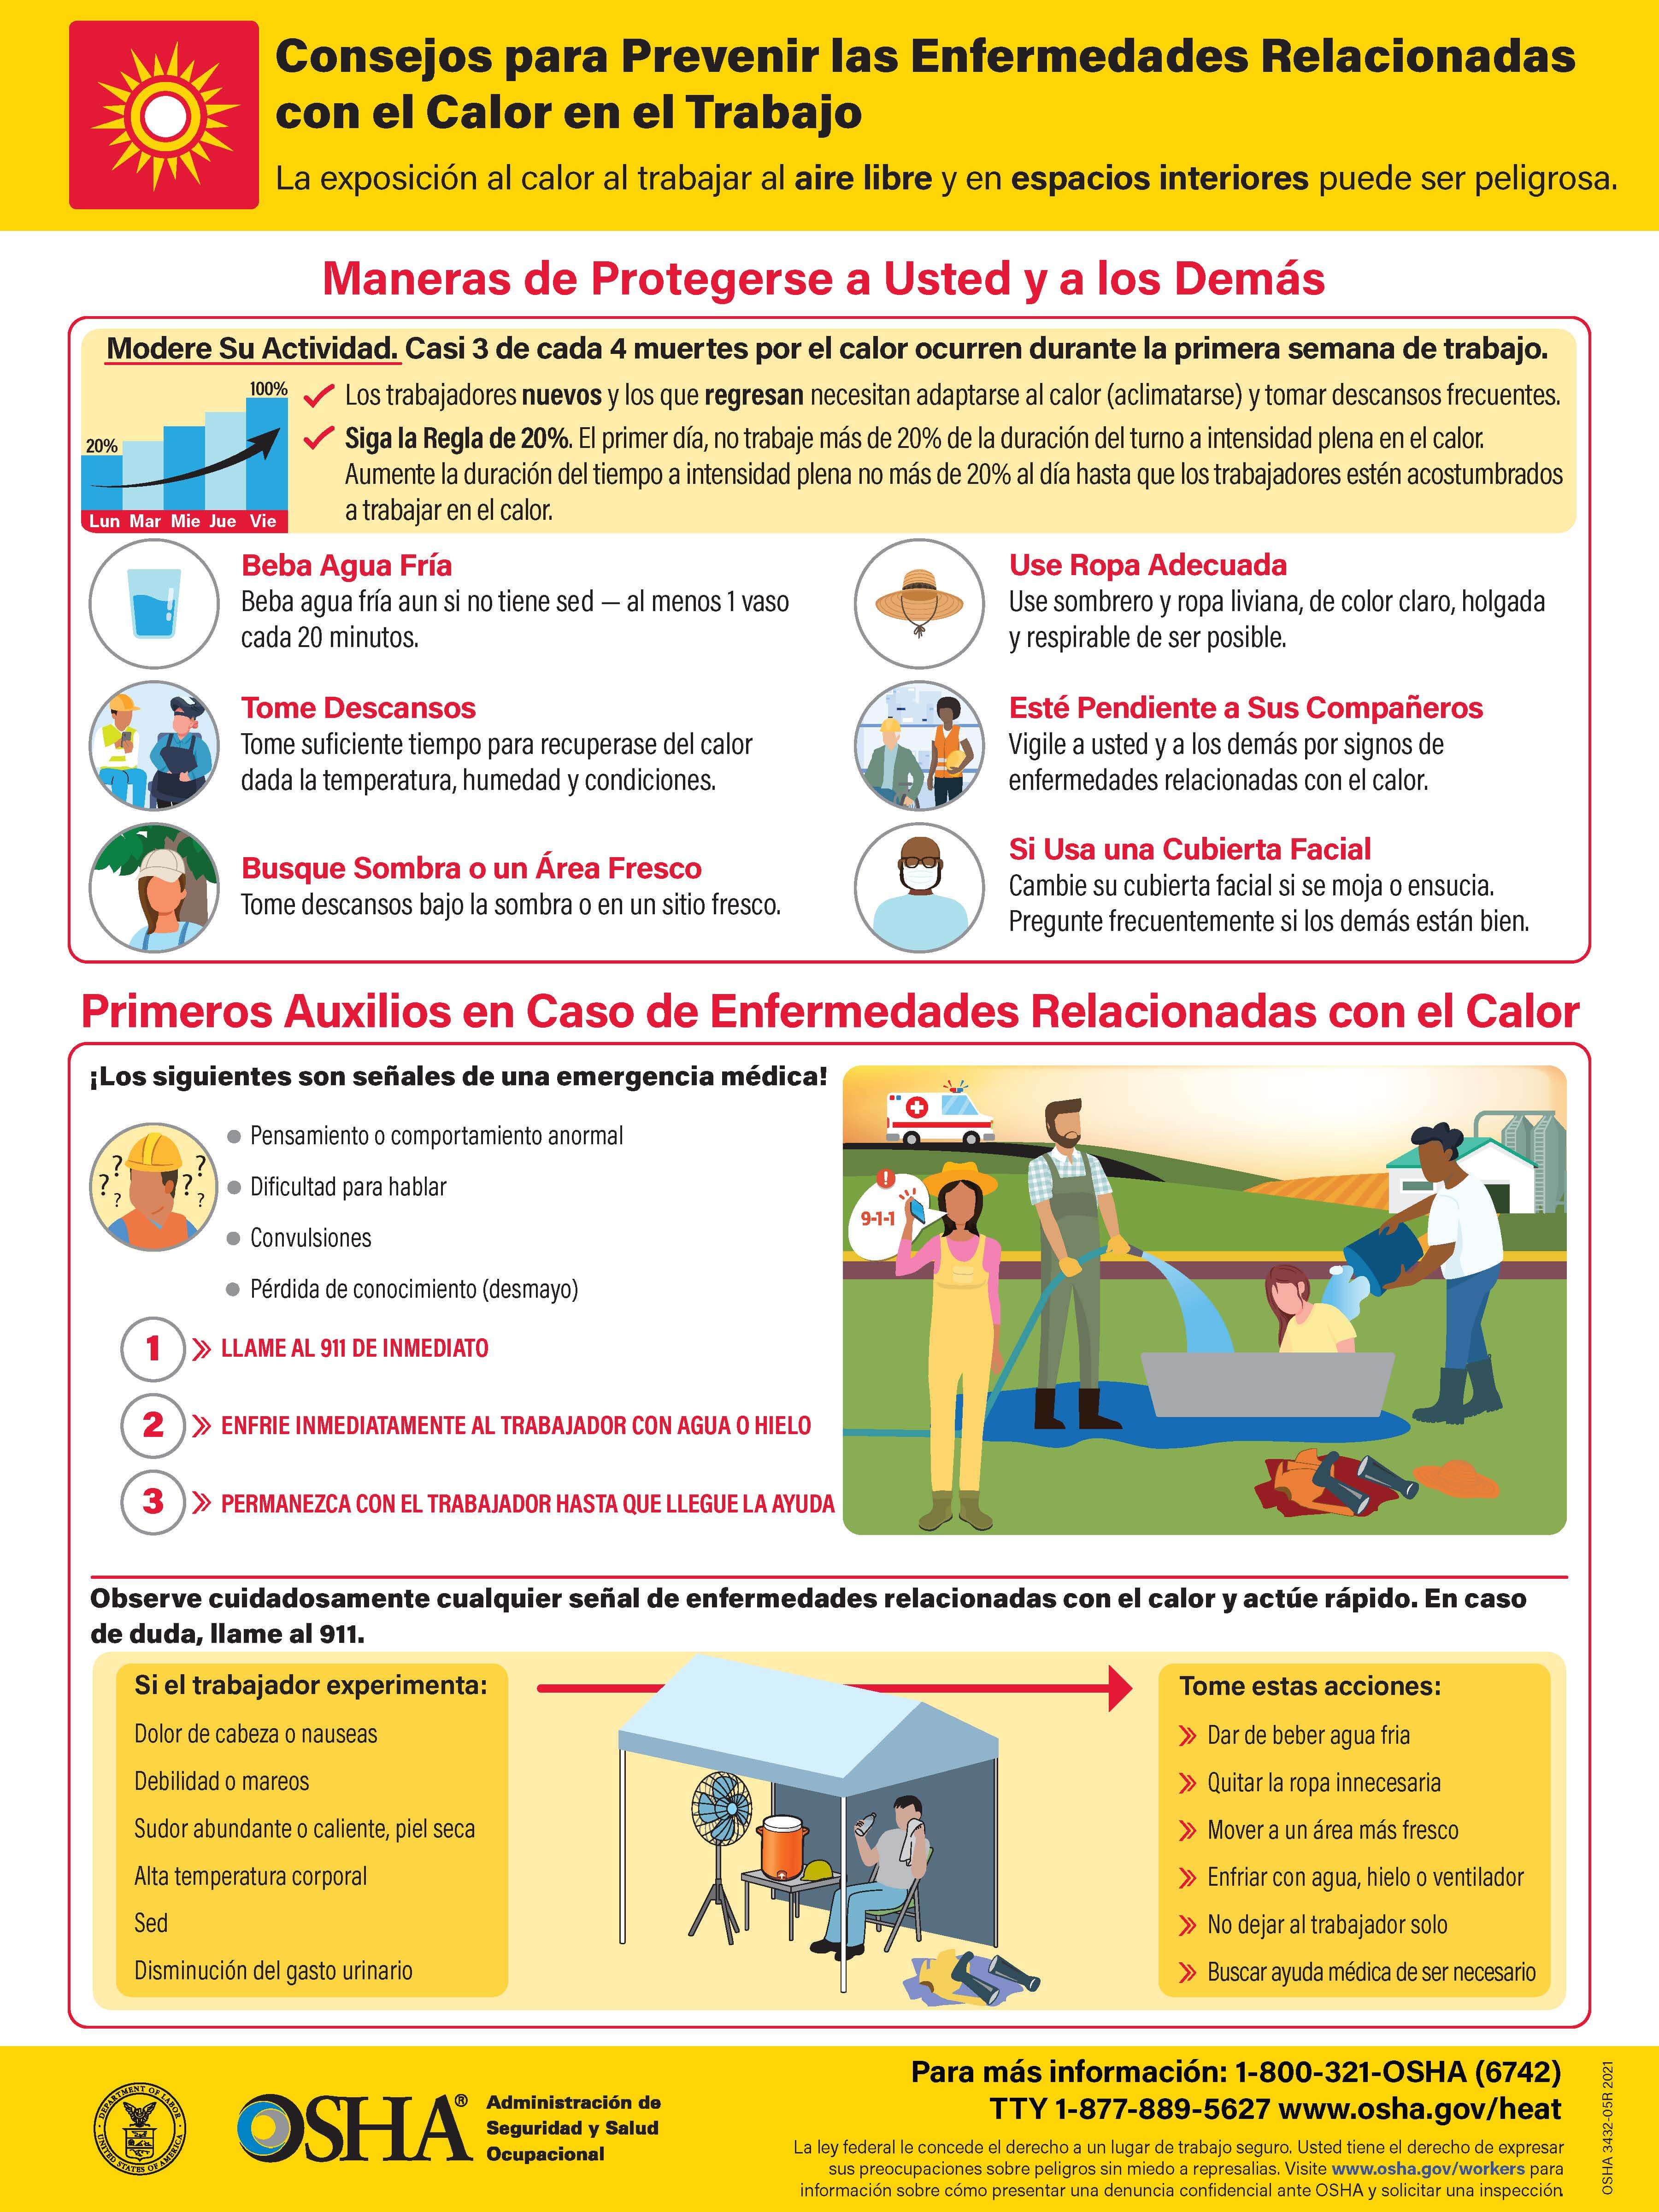 OSHA - Consejos para Prevenir las Enfermedades Relacionadas  con el Calor en el Trabajo